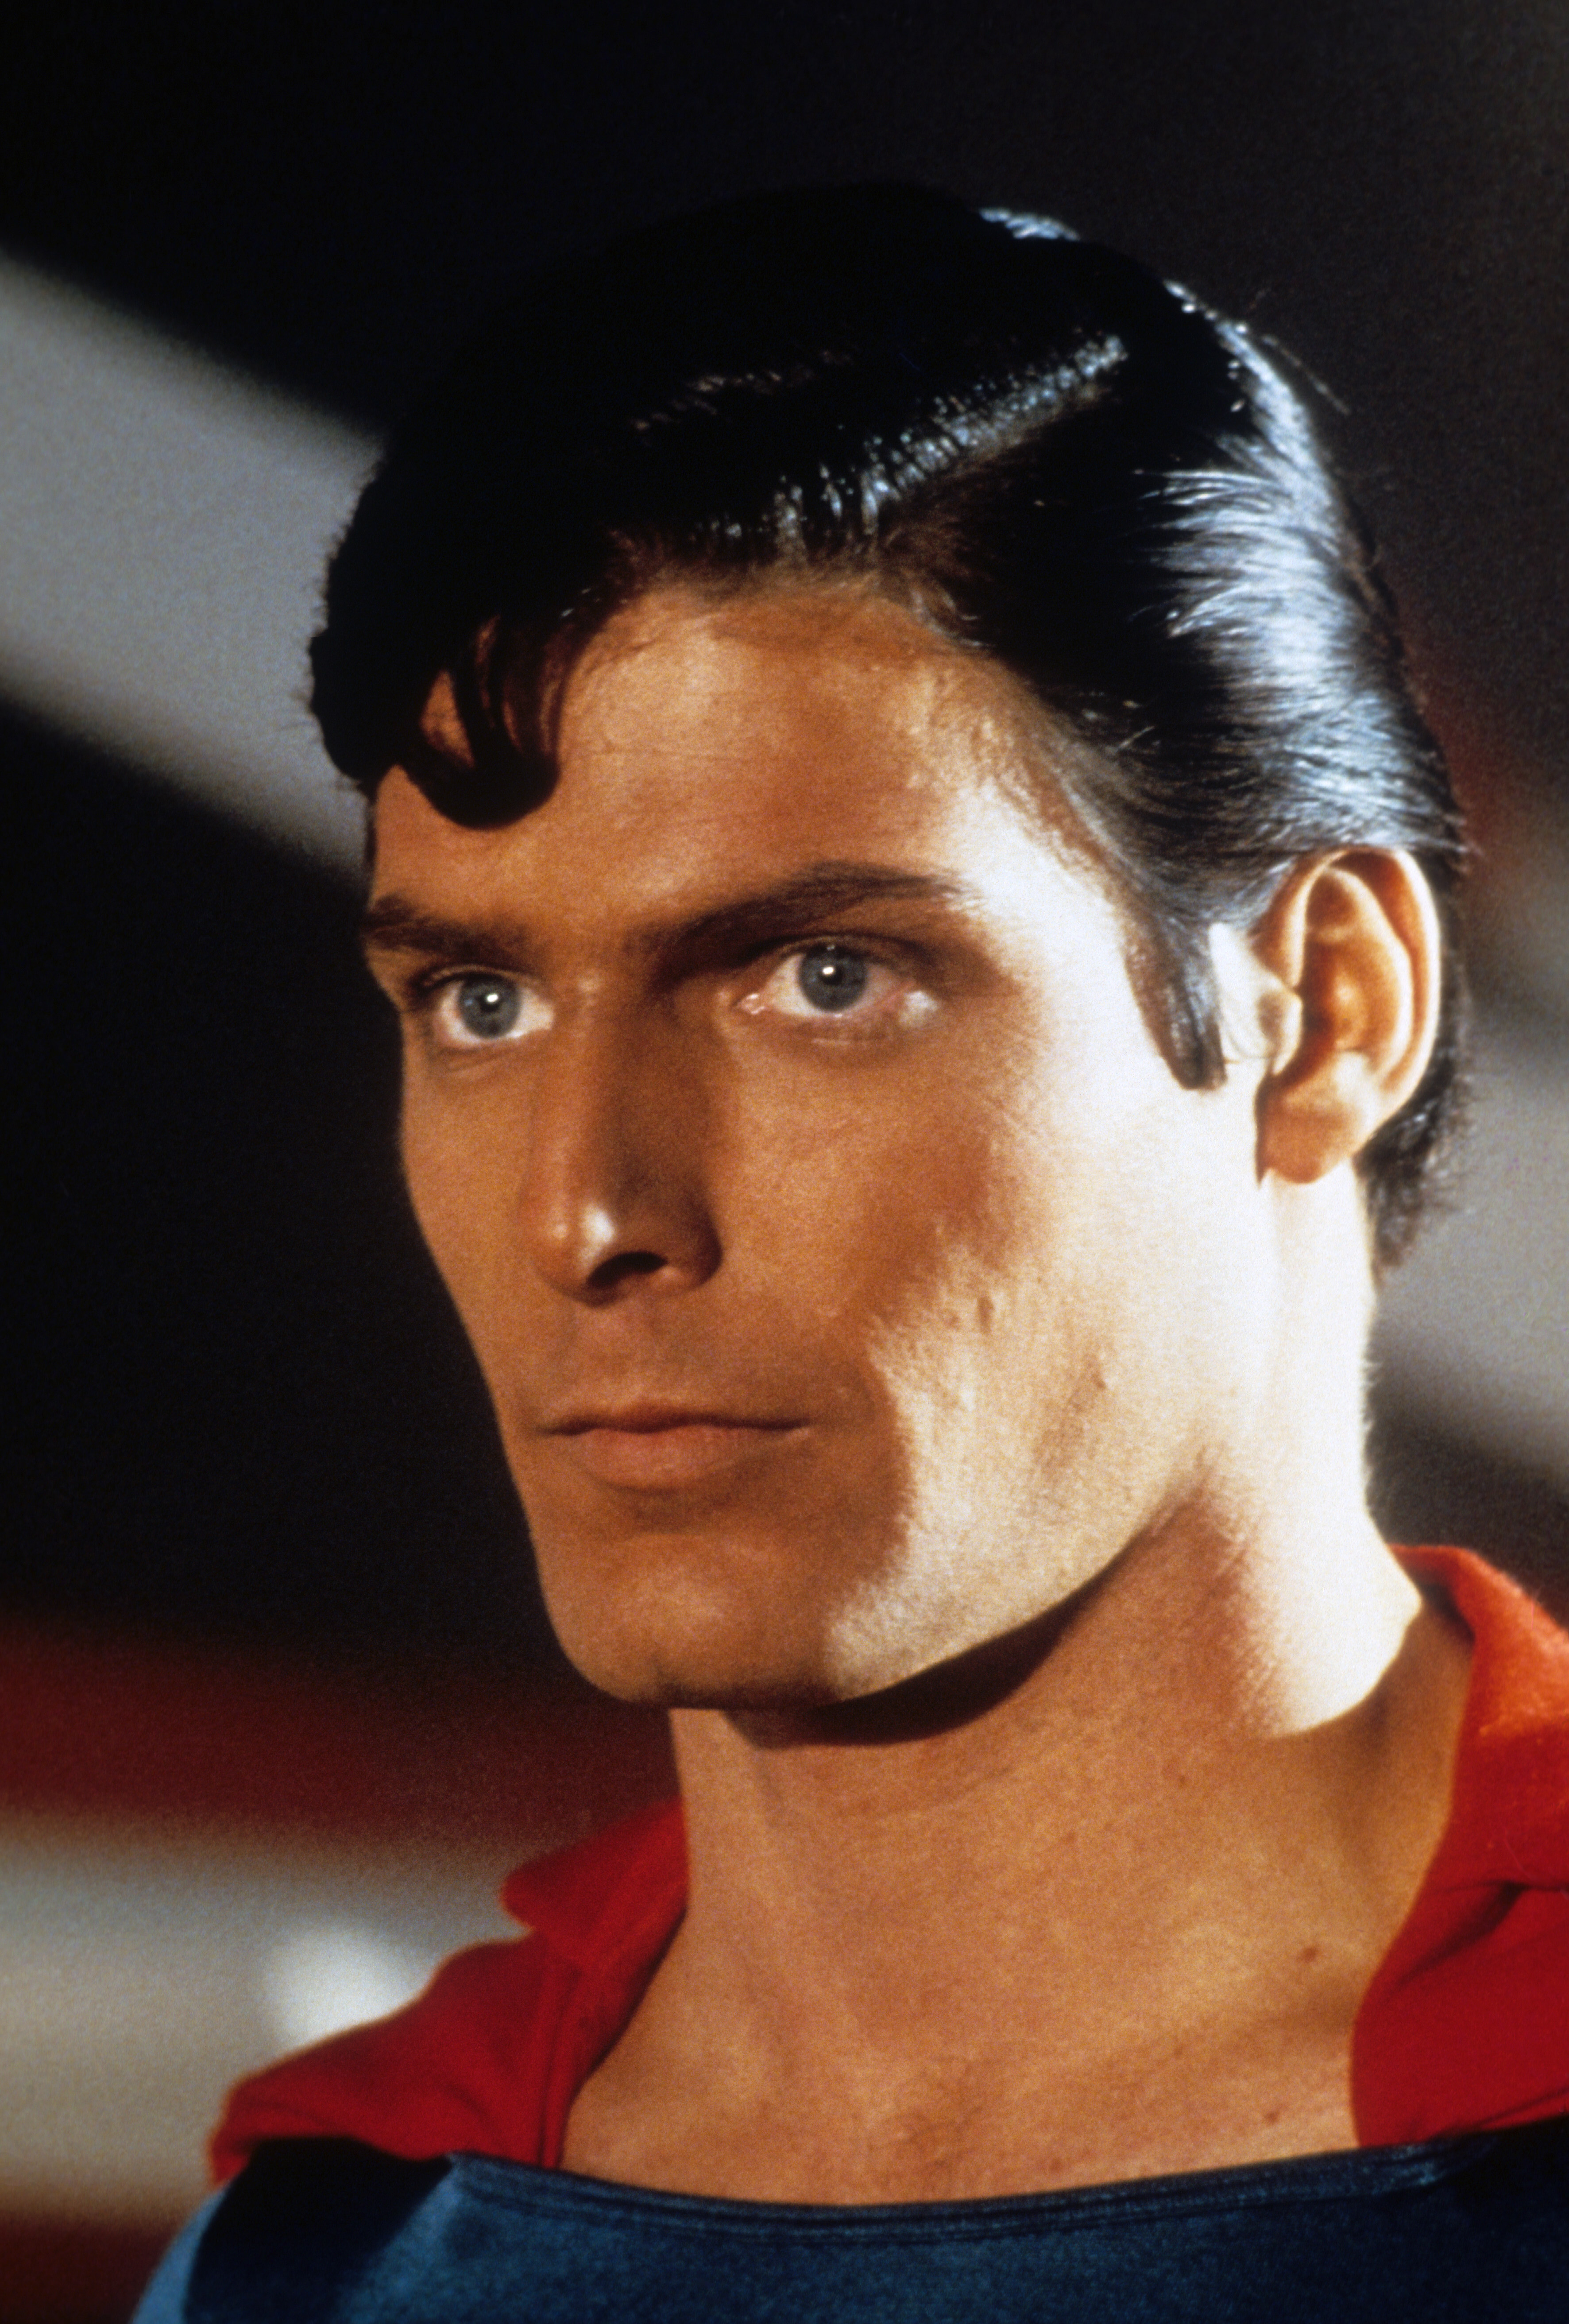 Kopfbild des Schauspielers Christopher Reeve als Superman in einer Szene aus dem Film "Superman", 1978 | Quelle: Getty Images